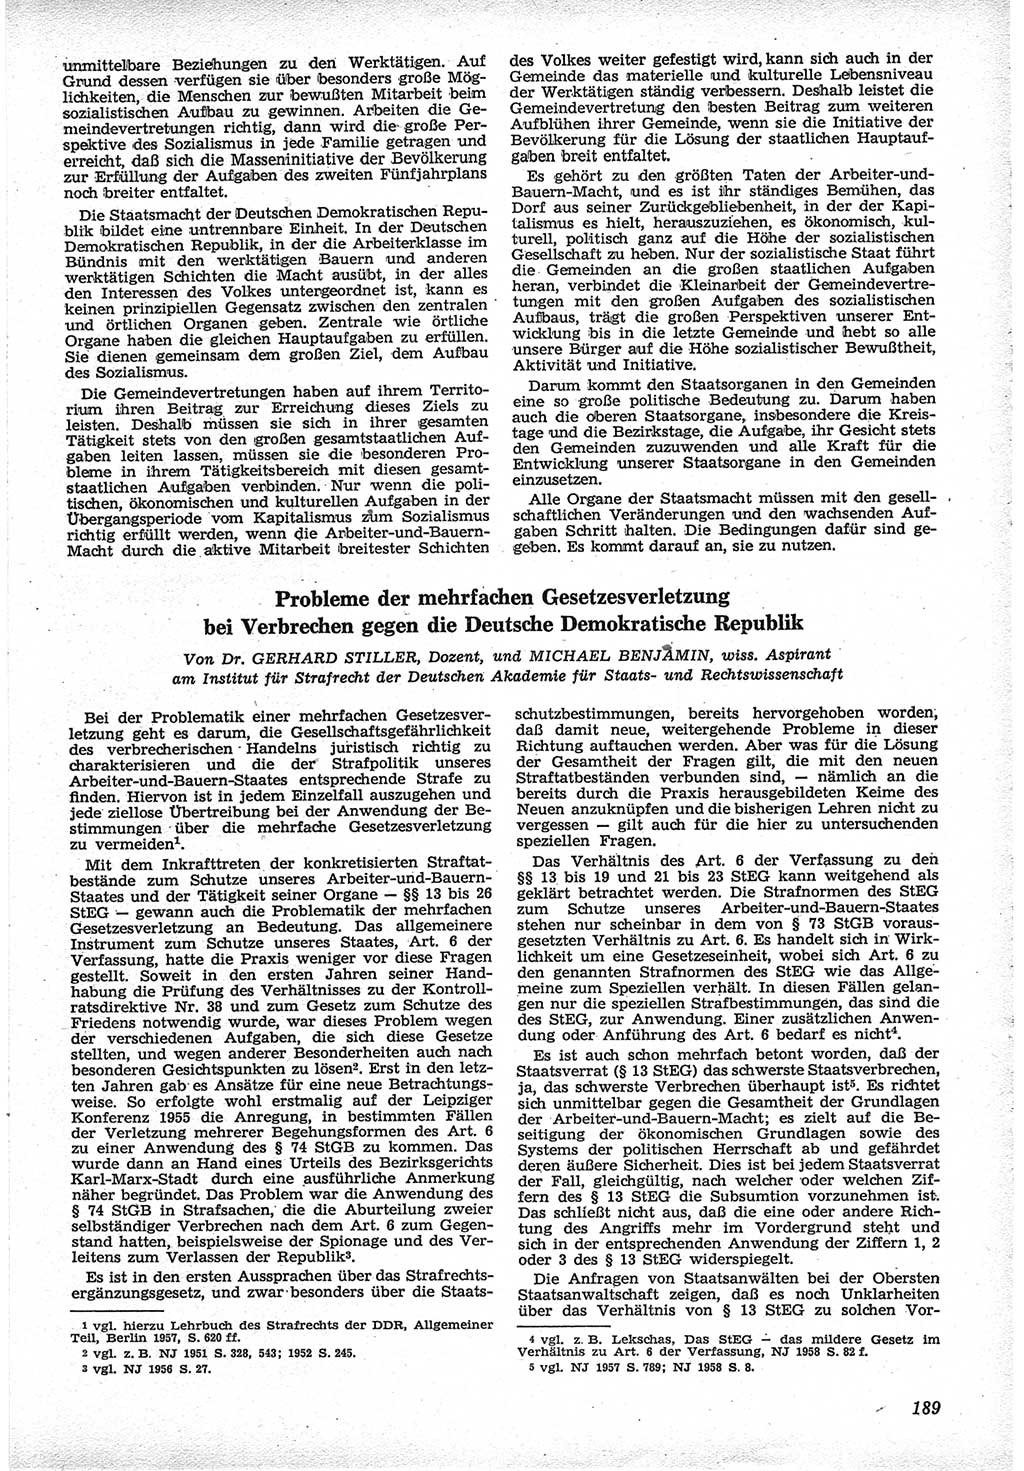 Neue Justiz (NJ), Zeitschrift für Recht und Rechtswissenschaft [Deutsche Demokratische Republik (DDR)], 12. Jahrgang 1958, Seite 189 (NJ DDR 1958, S. 189)